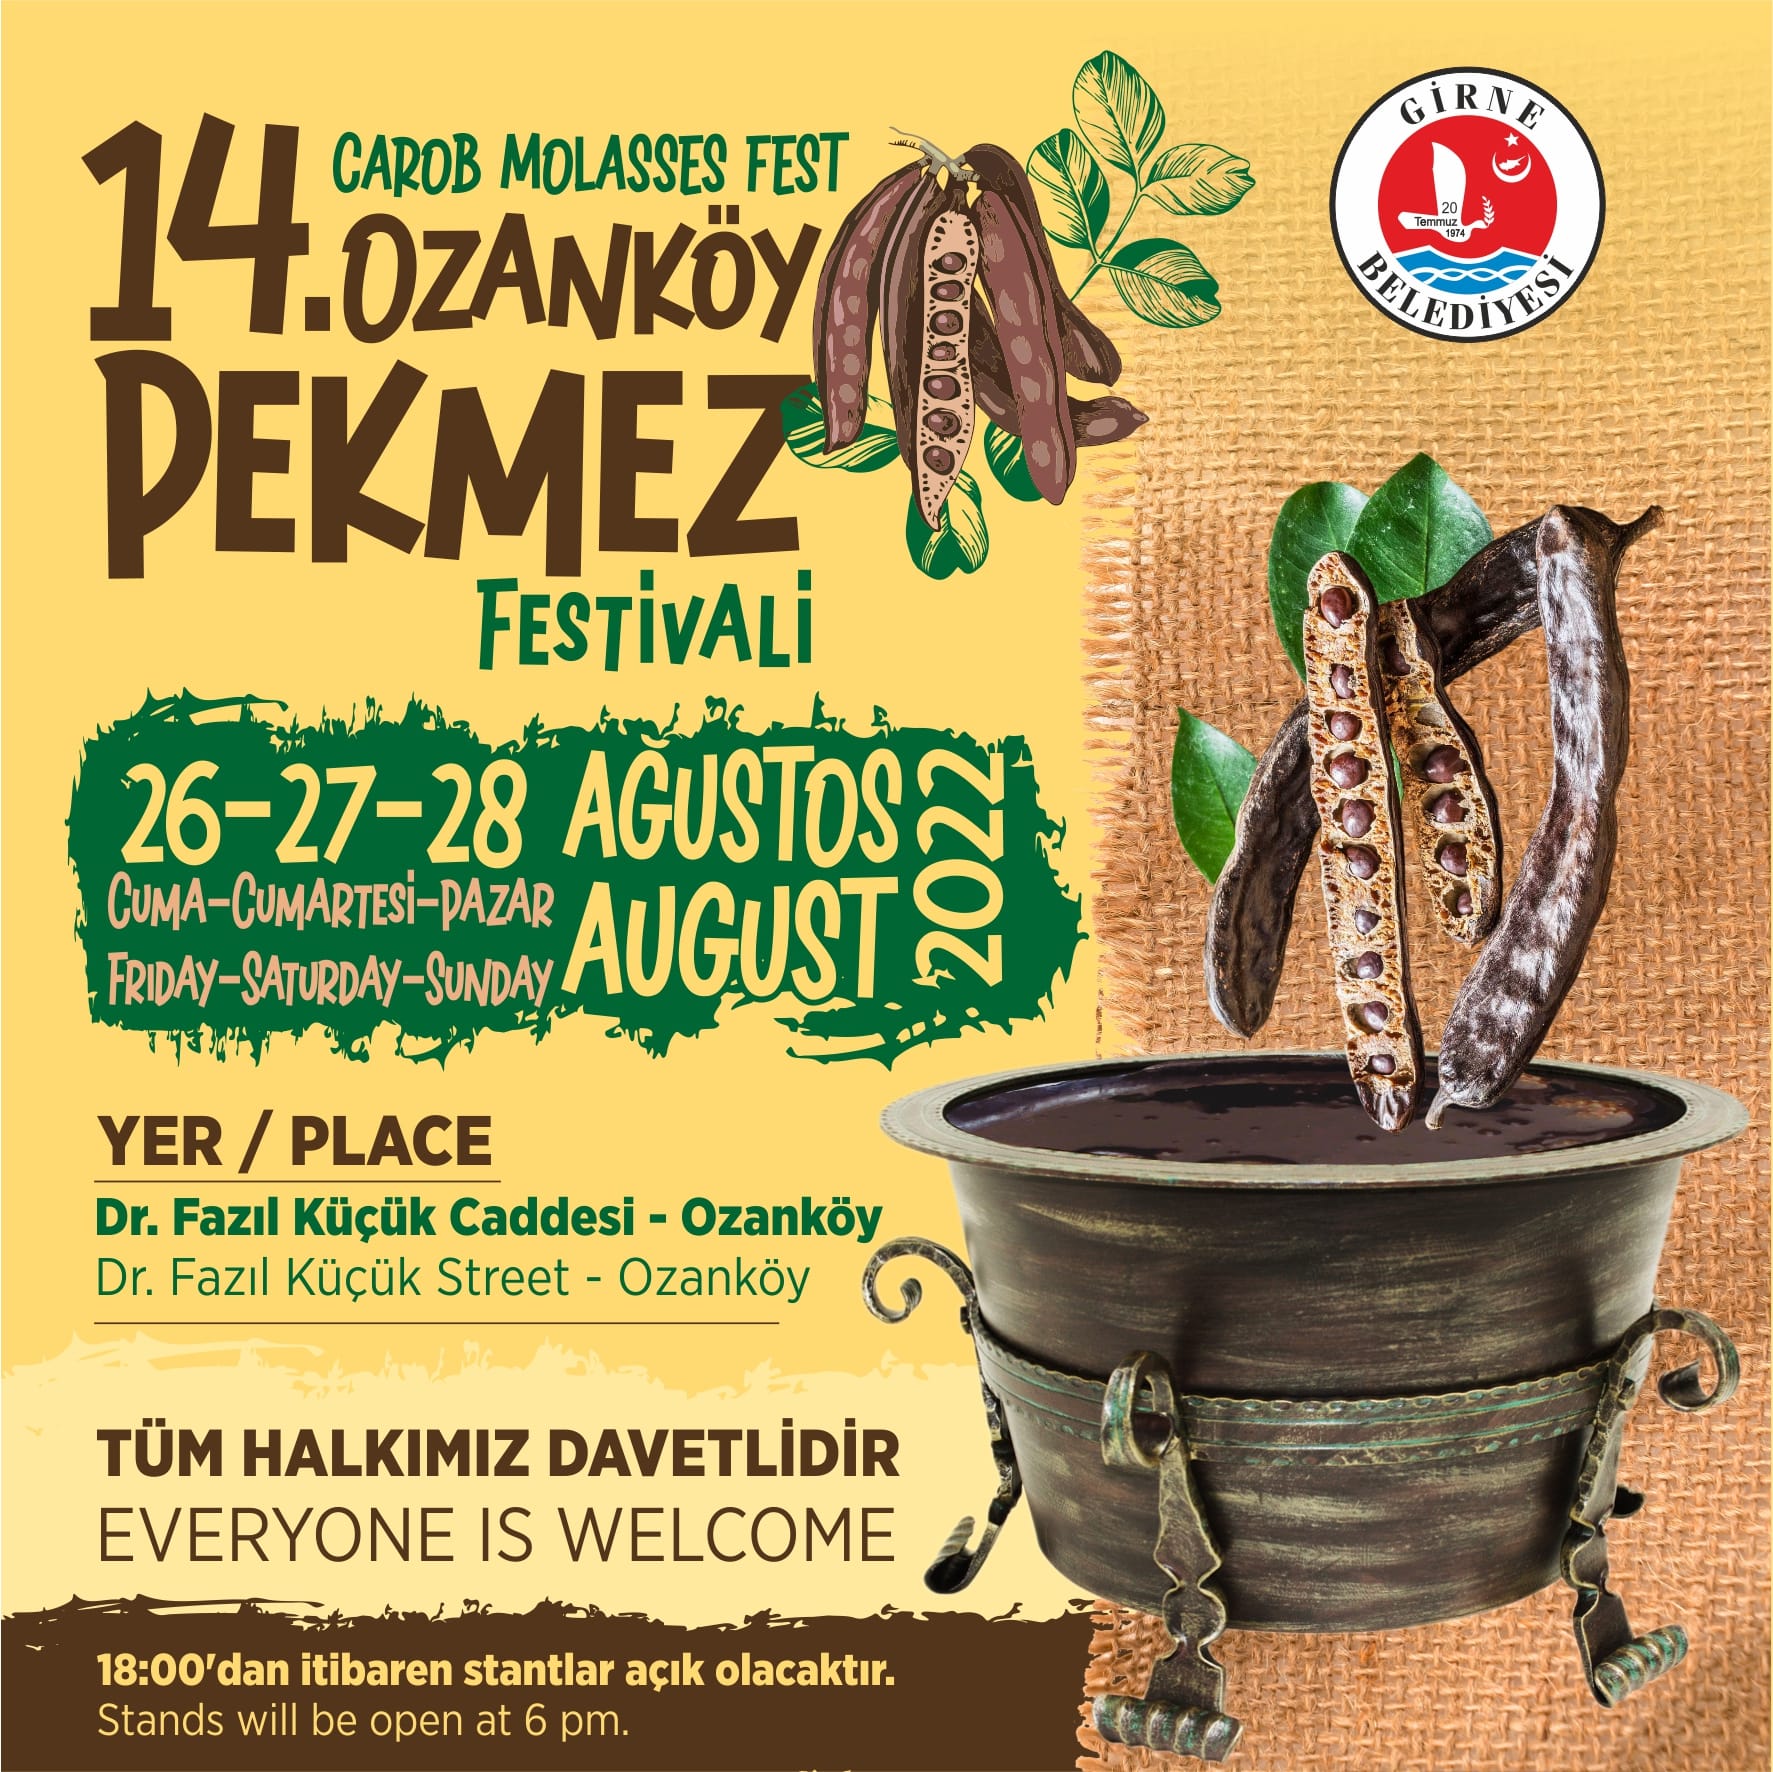 14. Ozanköy Pekmez Festivali Yarın Başlıyor